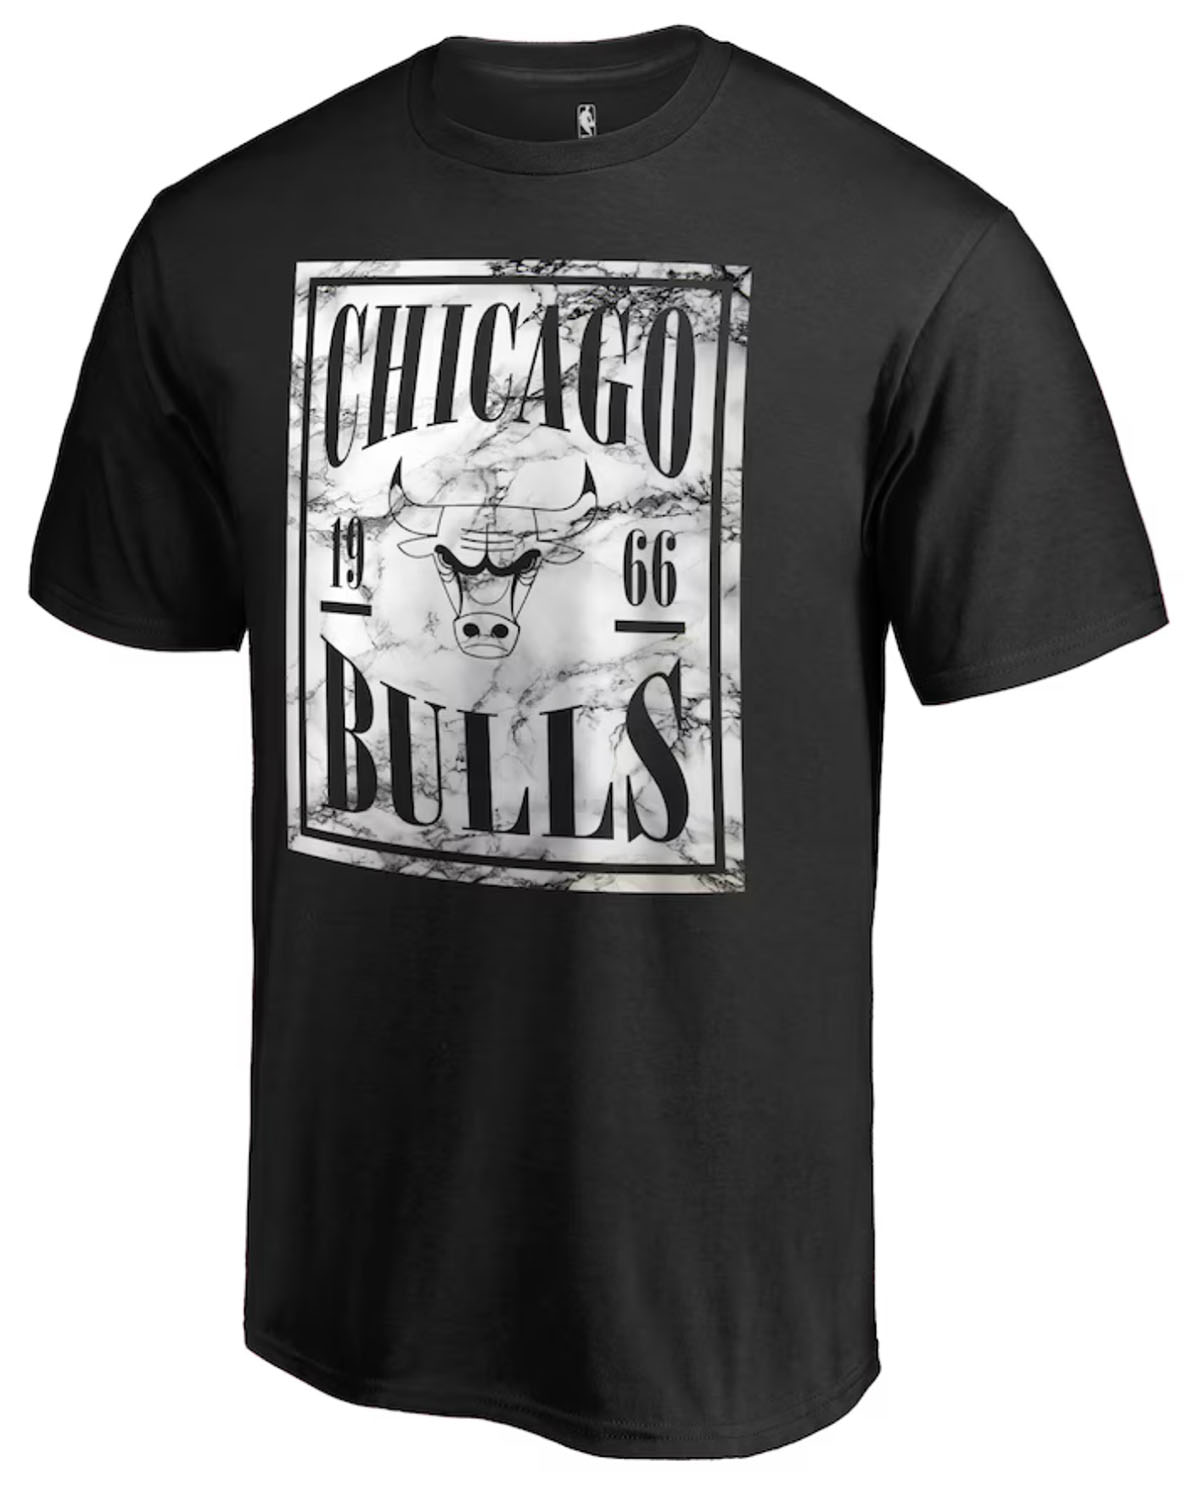 Chicago-Bulls-Fanatics-T-Shirt-Black-White